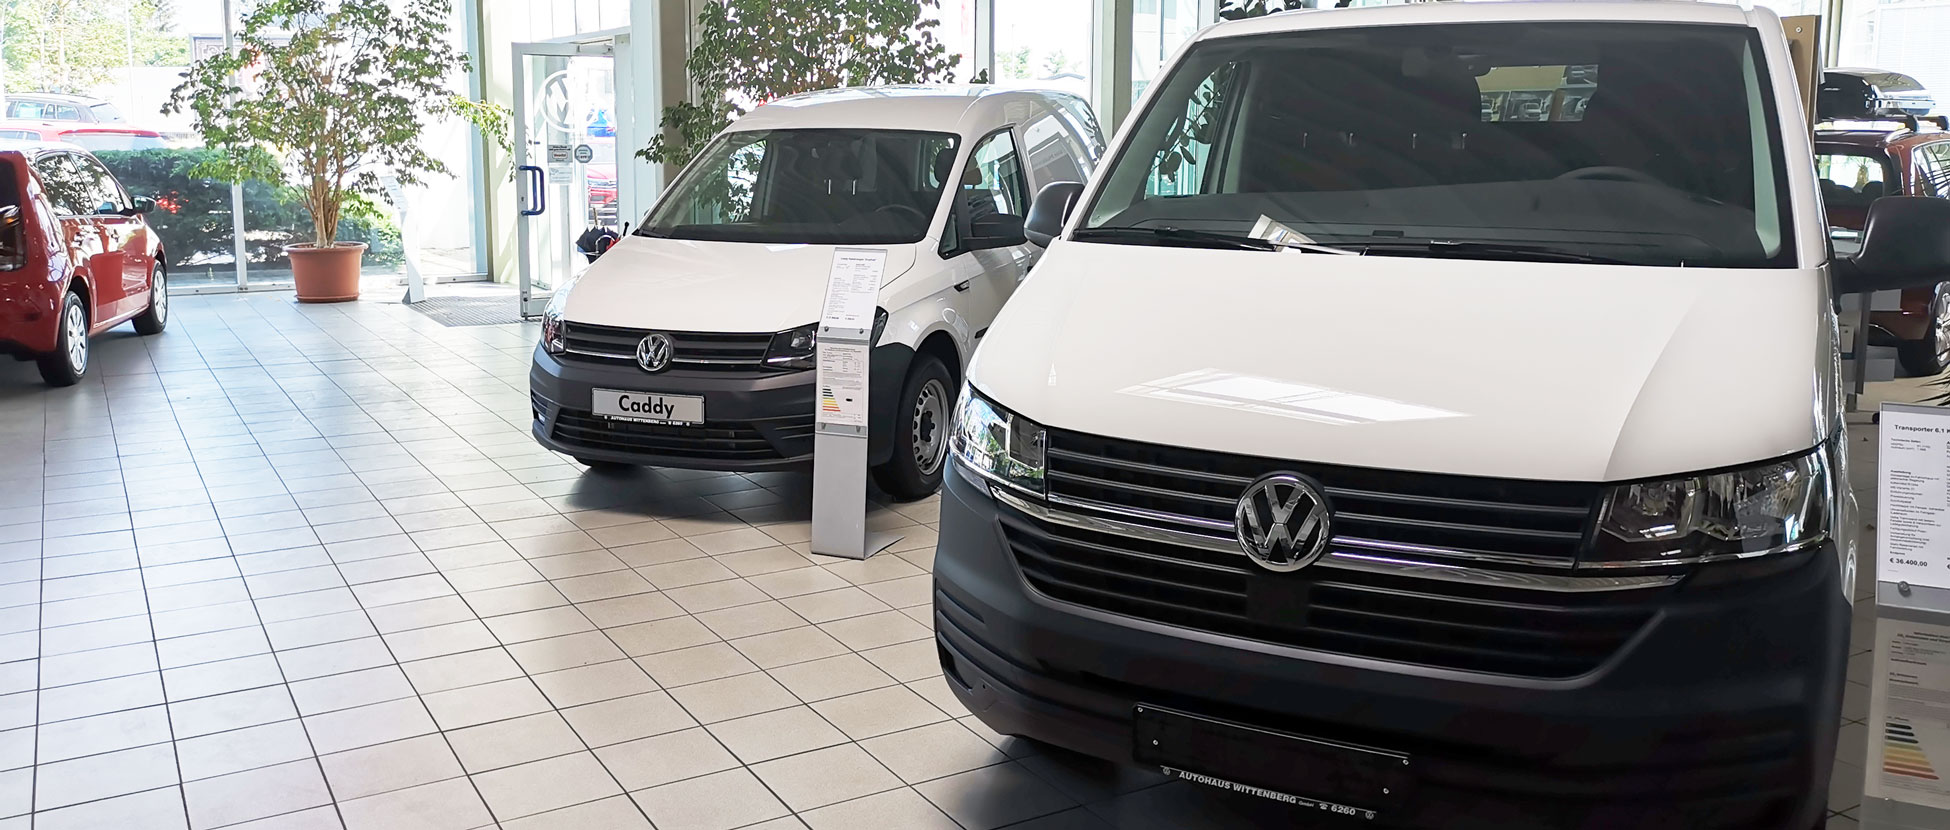 Volkswagen Nutzfahrzeuge Service Partner in Wittenberg